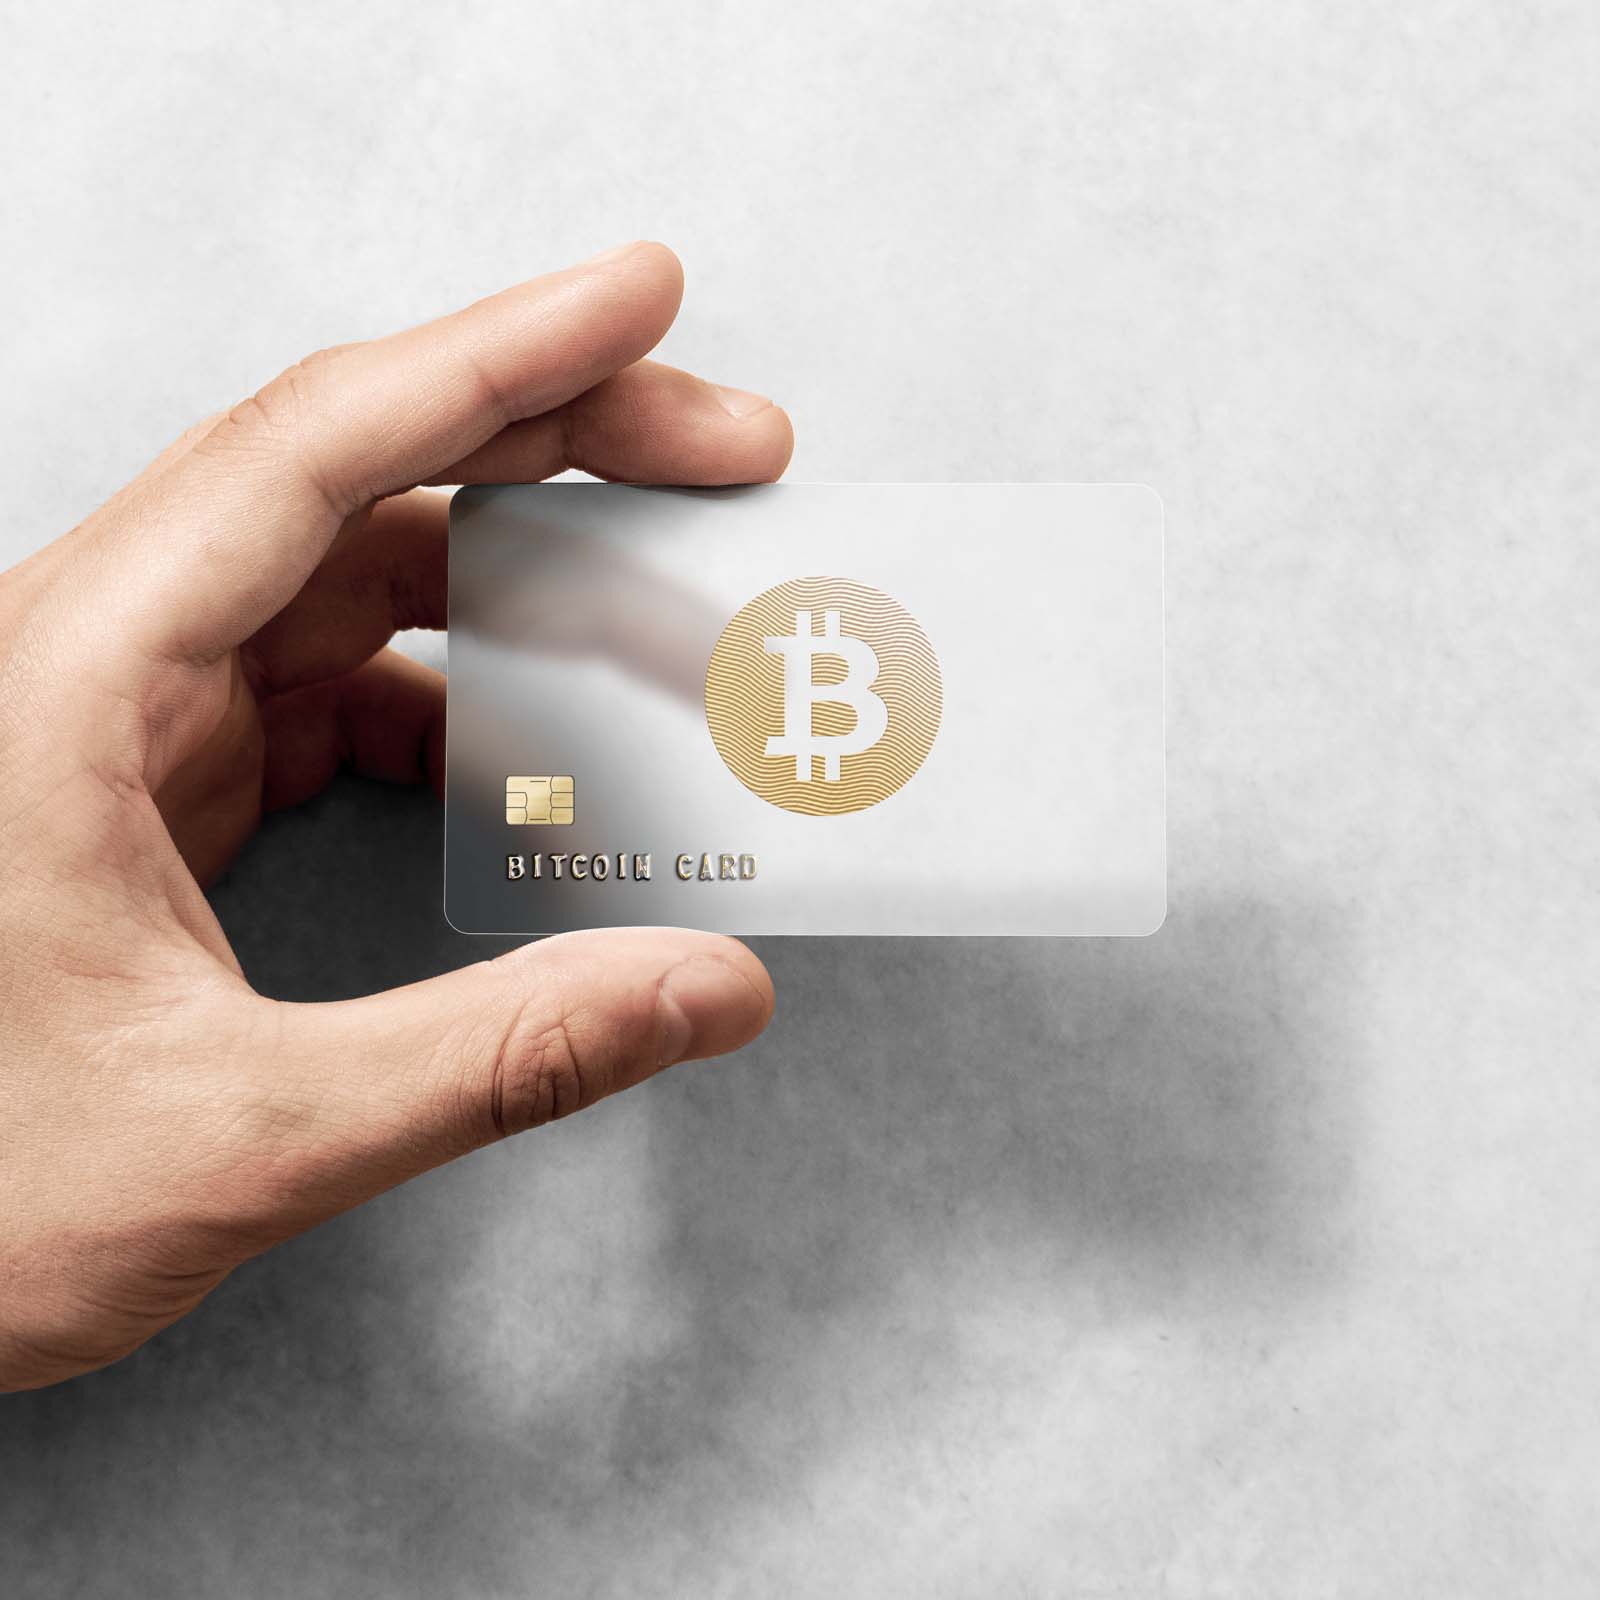 Cum să cumpărați Bitcoin cu cardul de debit - Ghidul comercial 2 Learn 2021